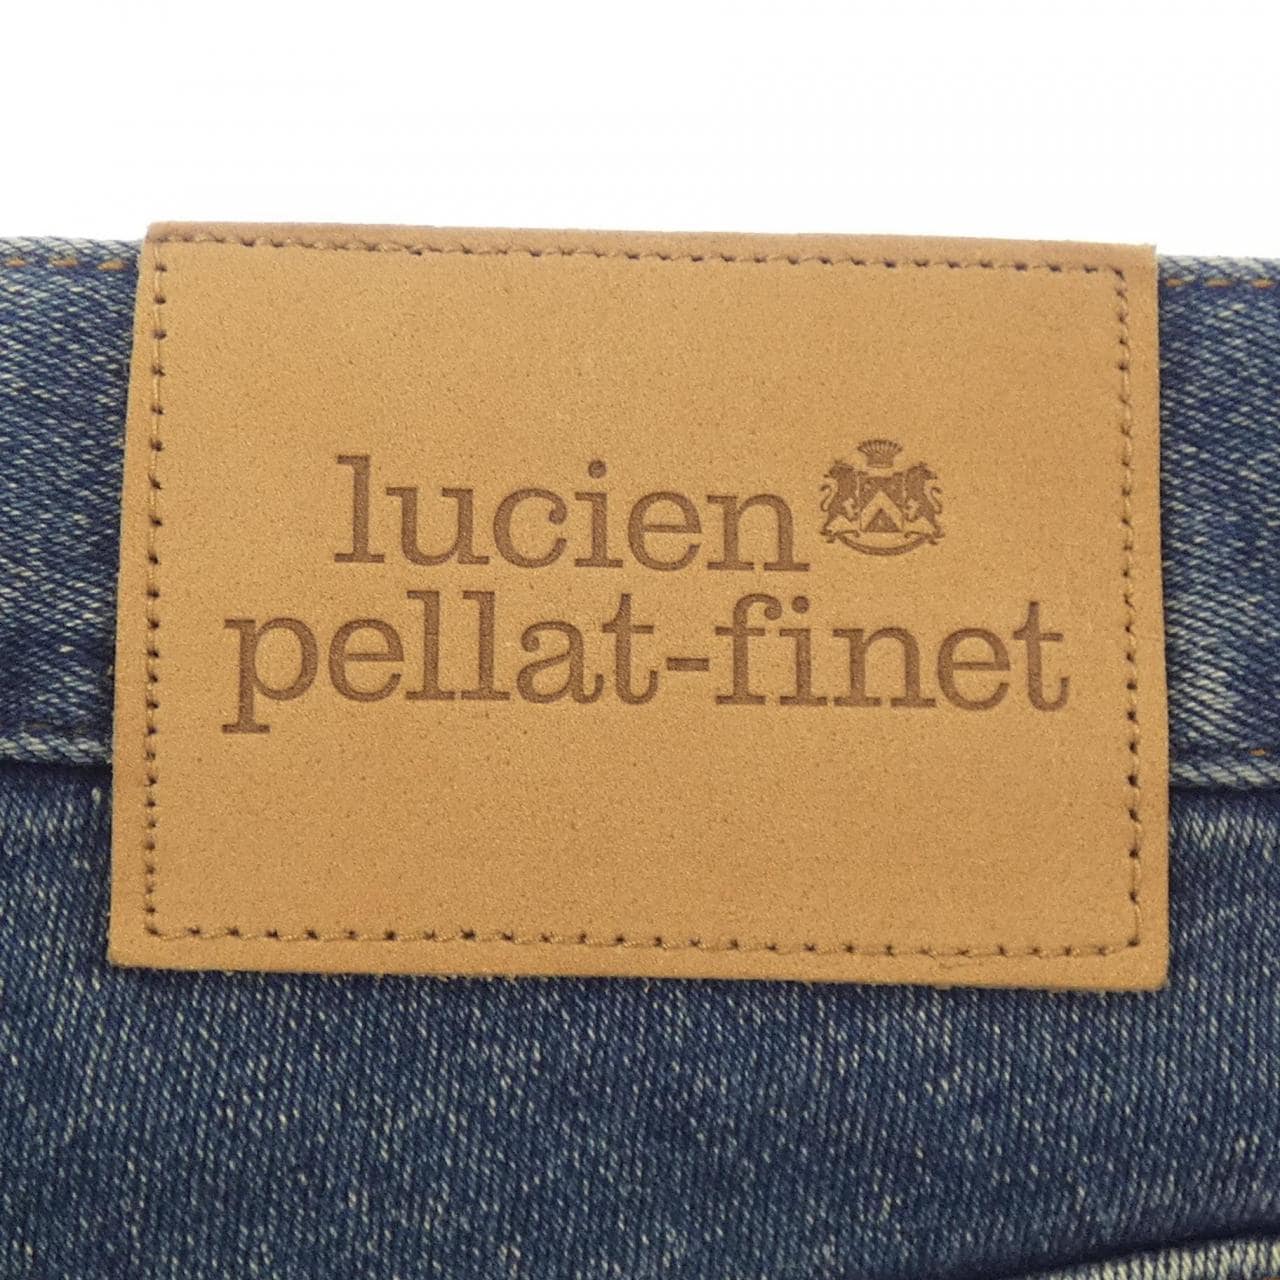 ルシアン ペラフィネ lucien pellat-finet ジーンズ